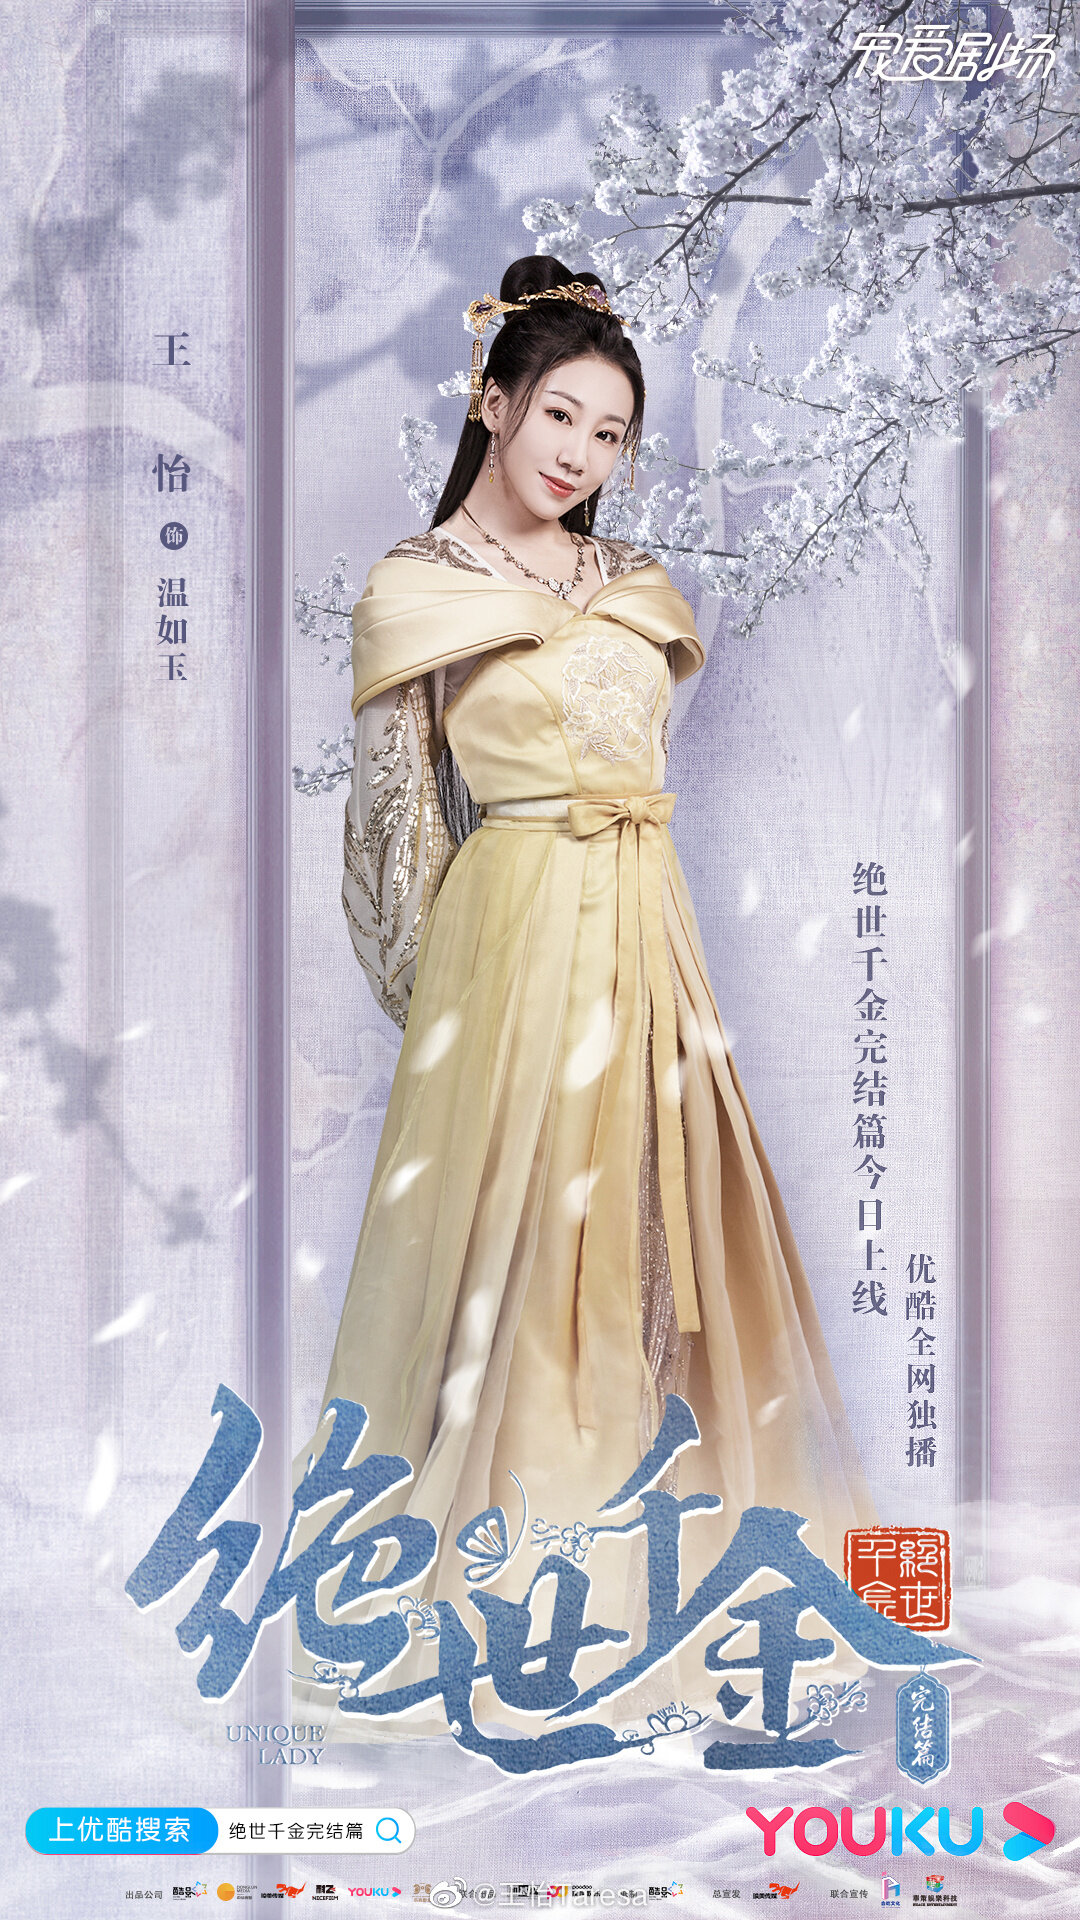 Xiao Hong / Wen Ru Yu (Princess of Beiyu)